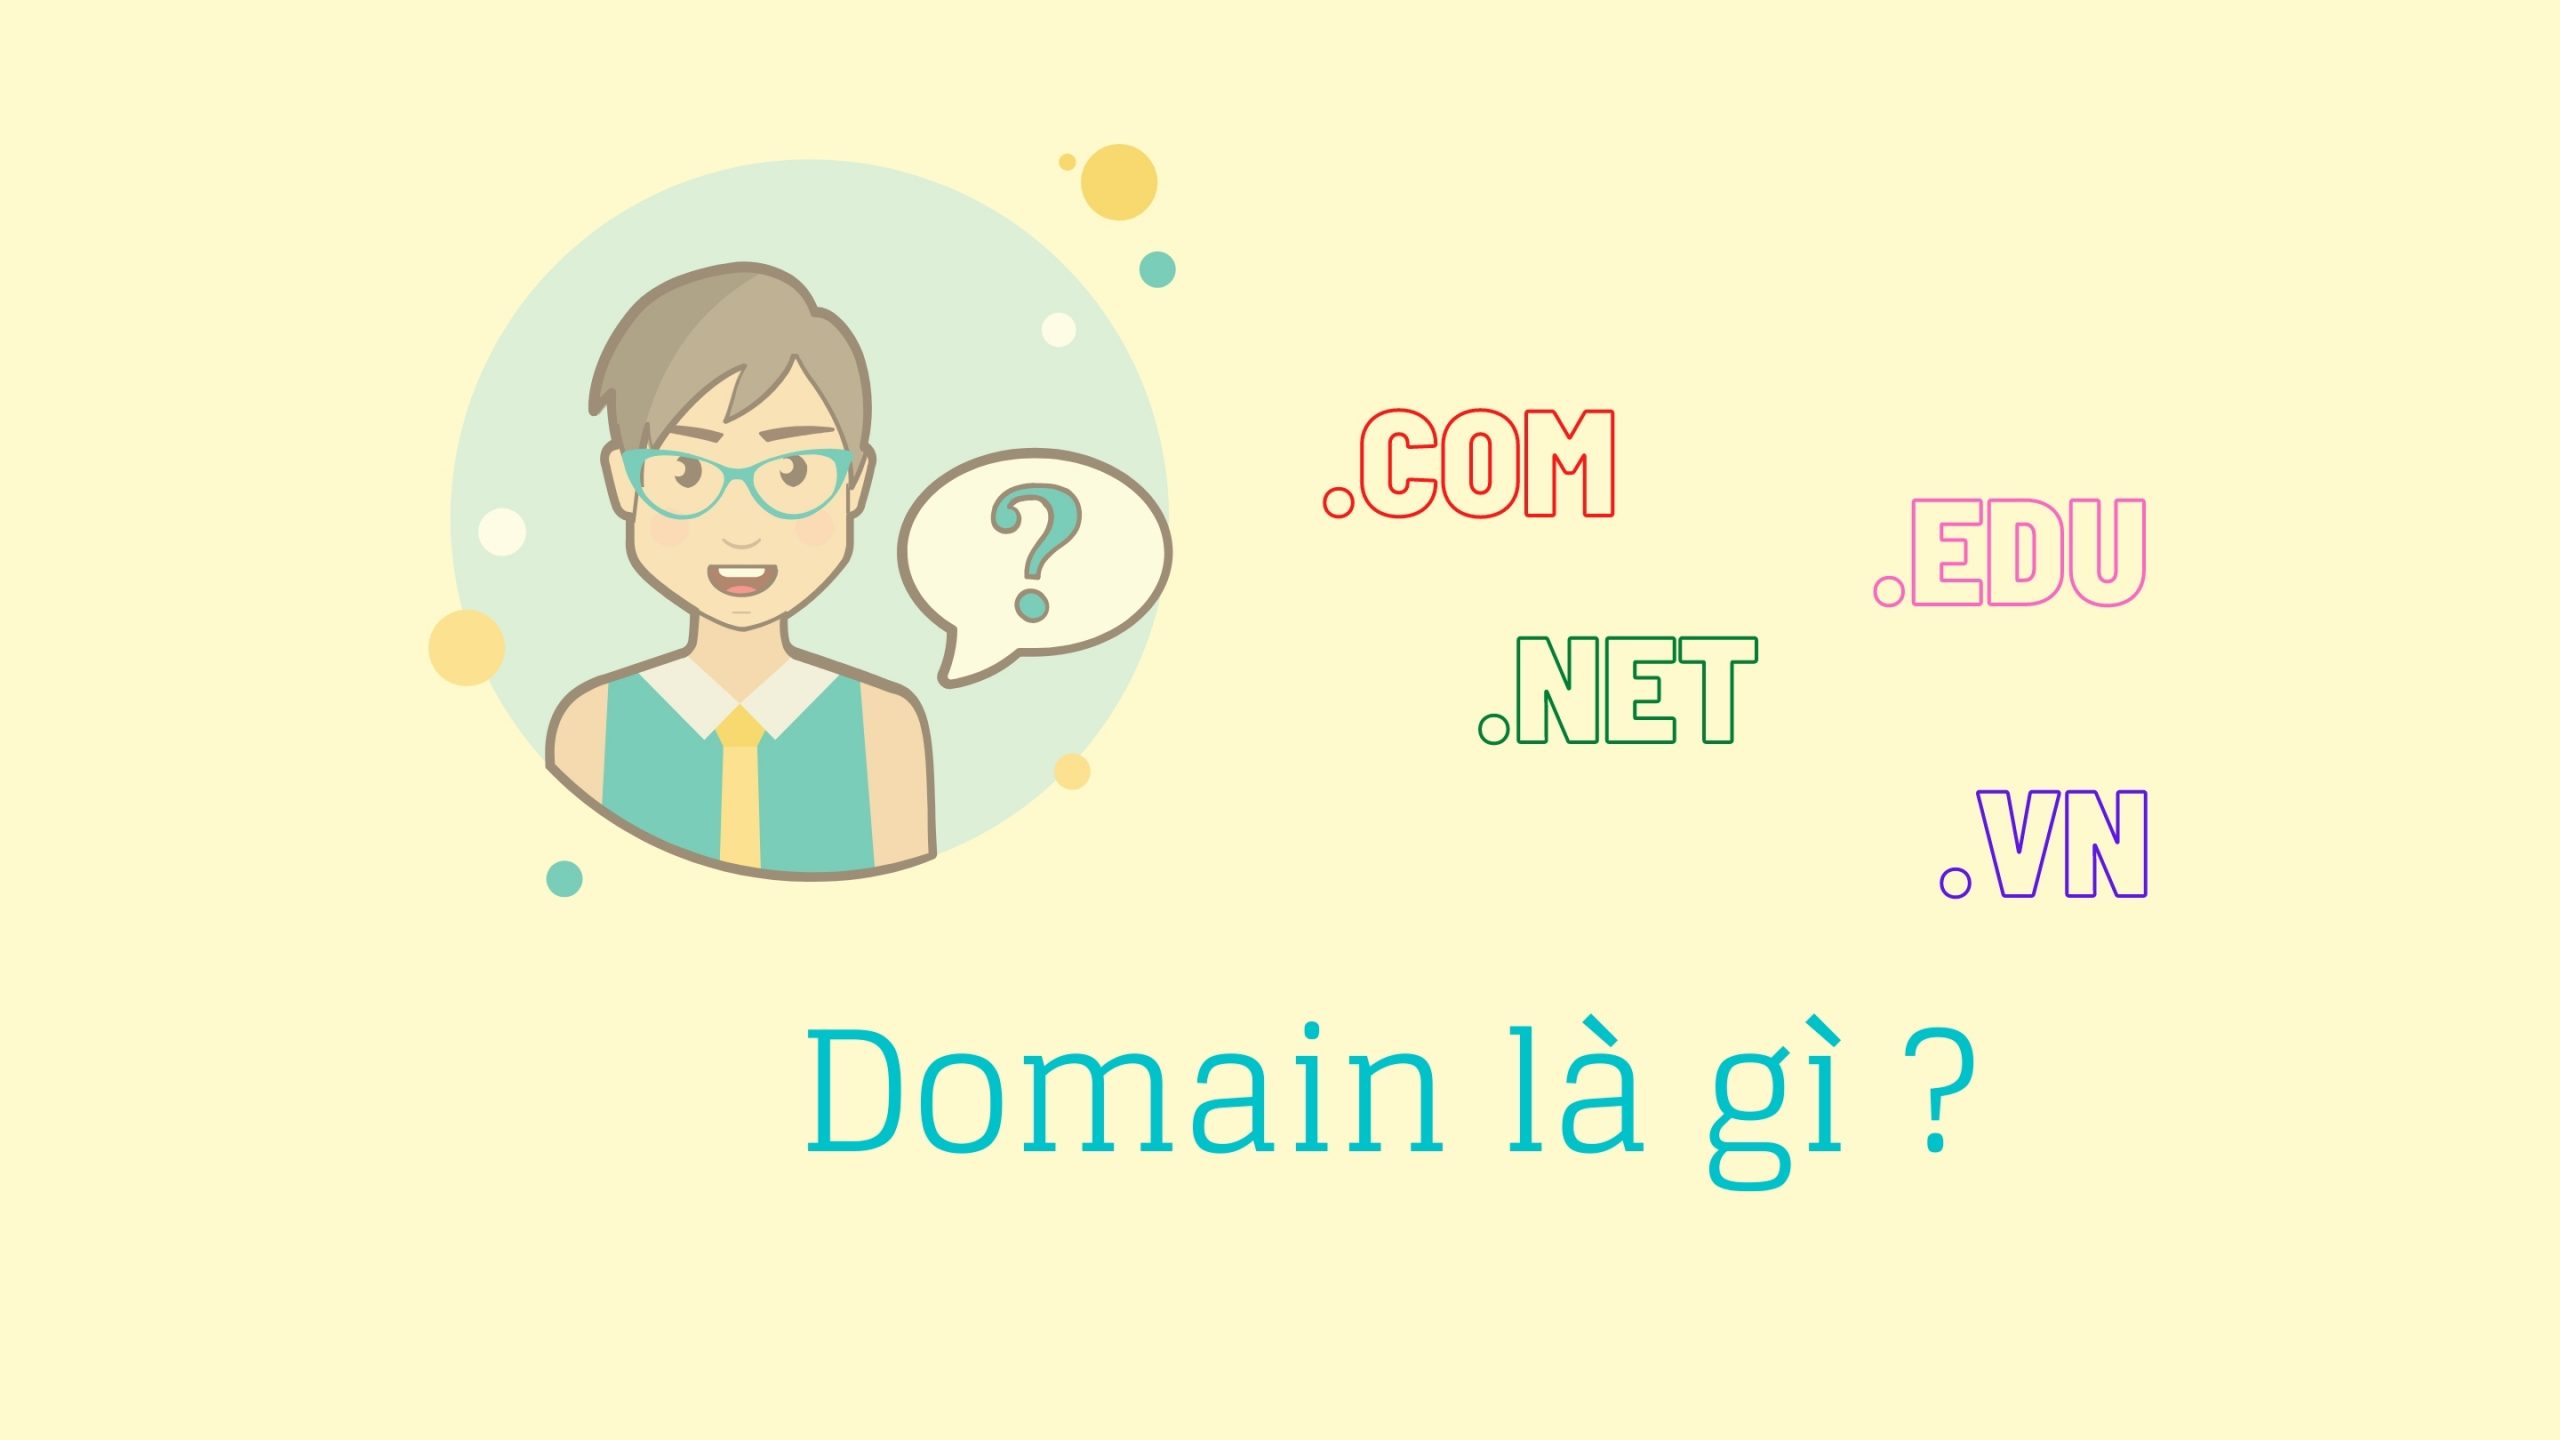 Domain - Tên miền là gì?